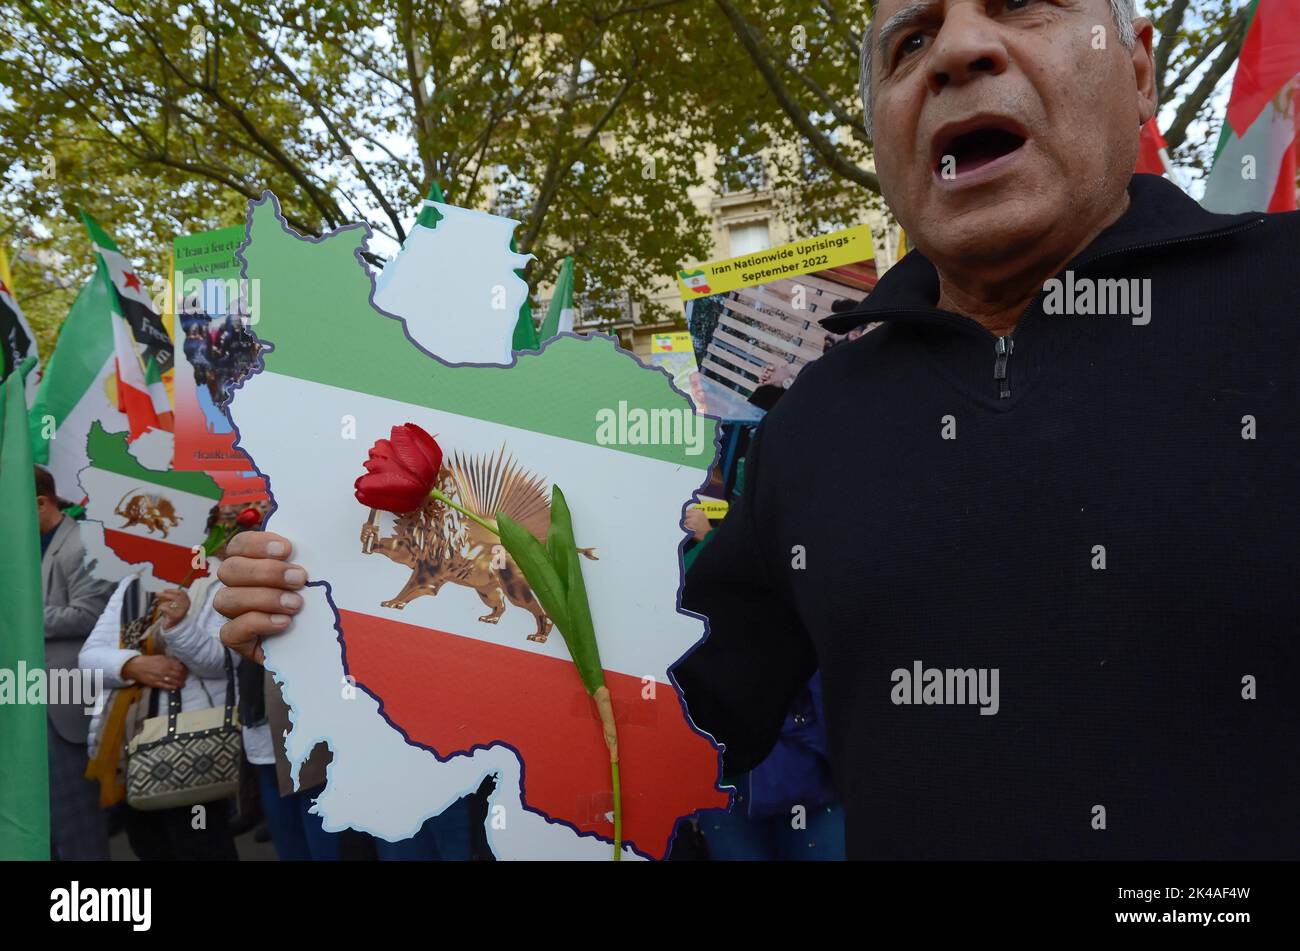 nouveau rassemblement de soutien au peuple iranien qui se révolte contre le régime dictatorial des mollahs Stockfoto